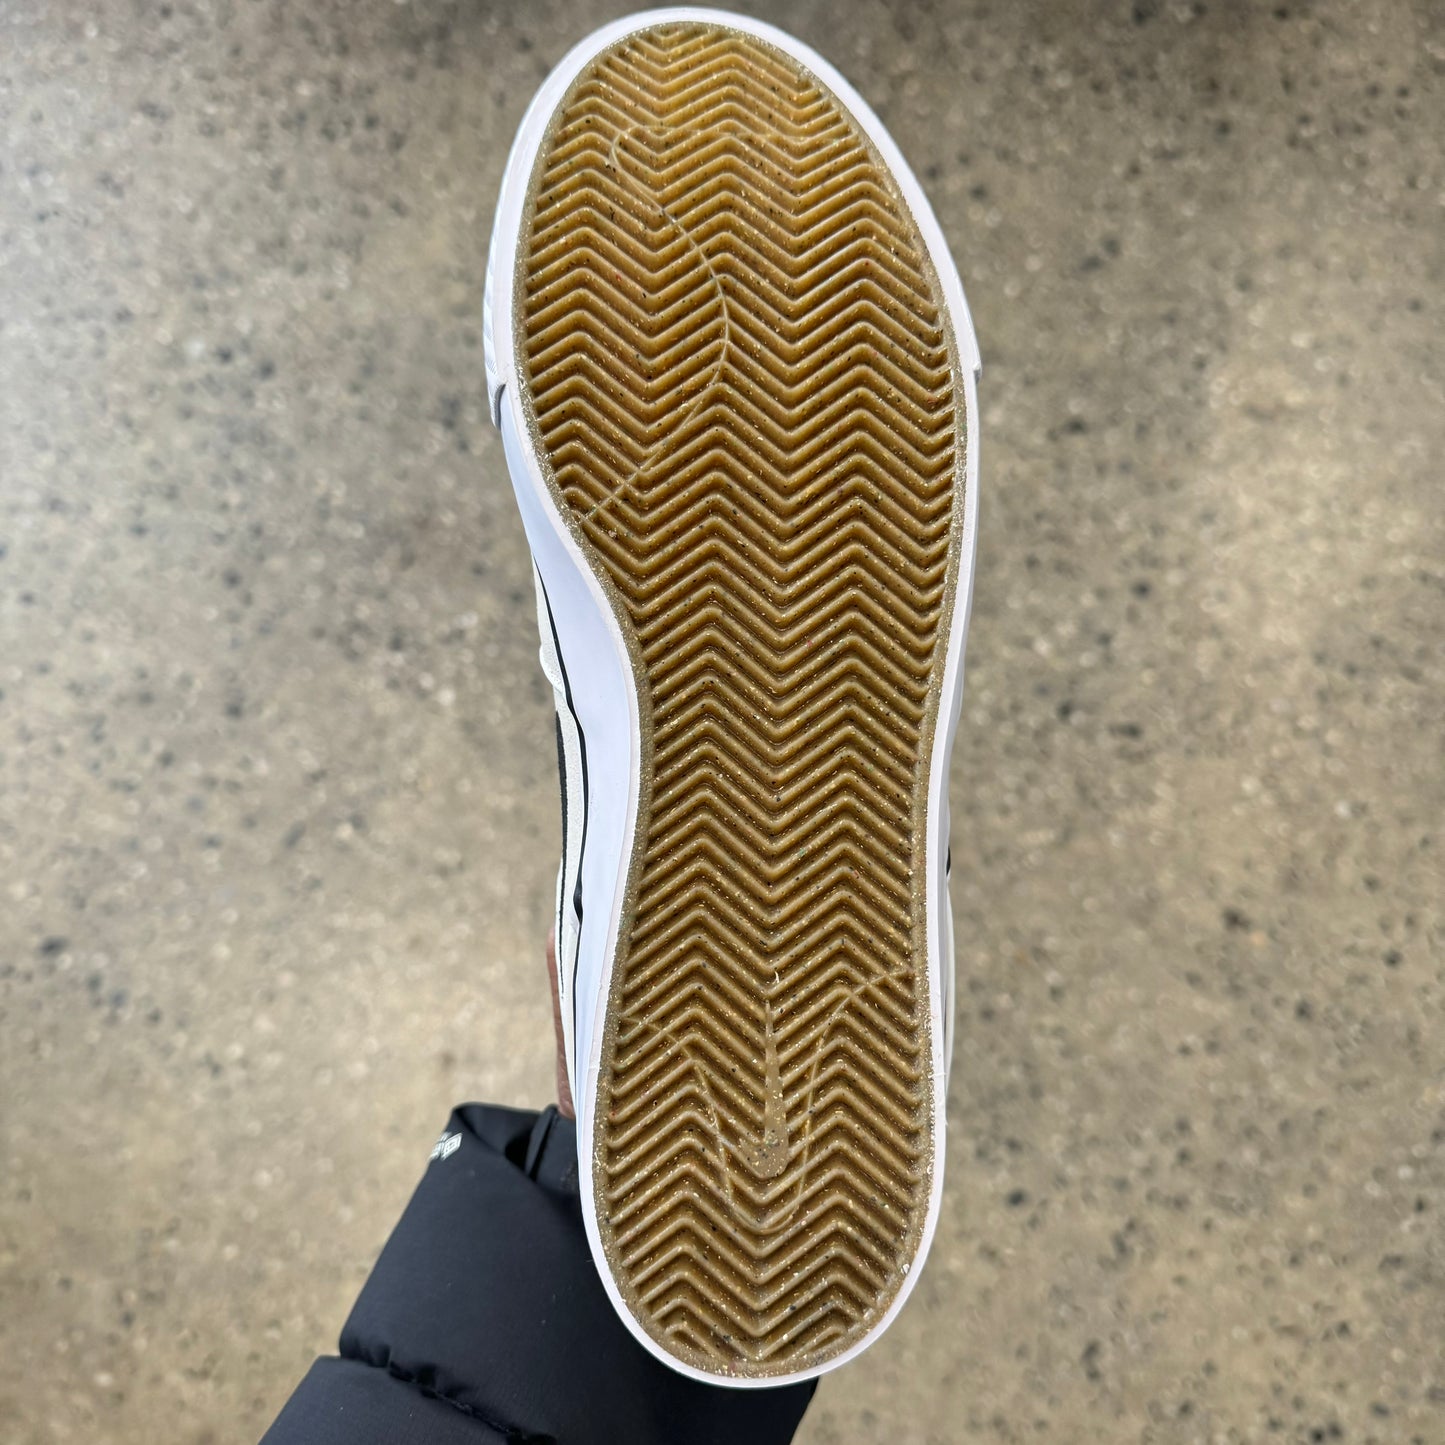 view of gum rubber bottom on skate sneaker